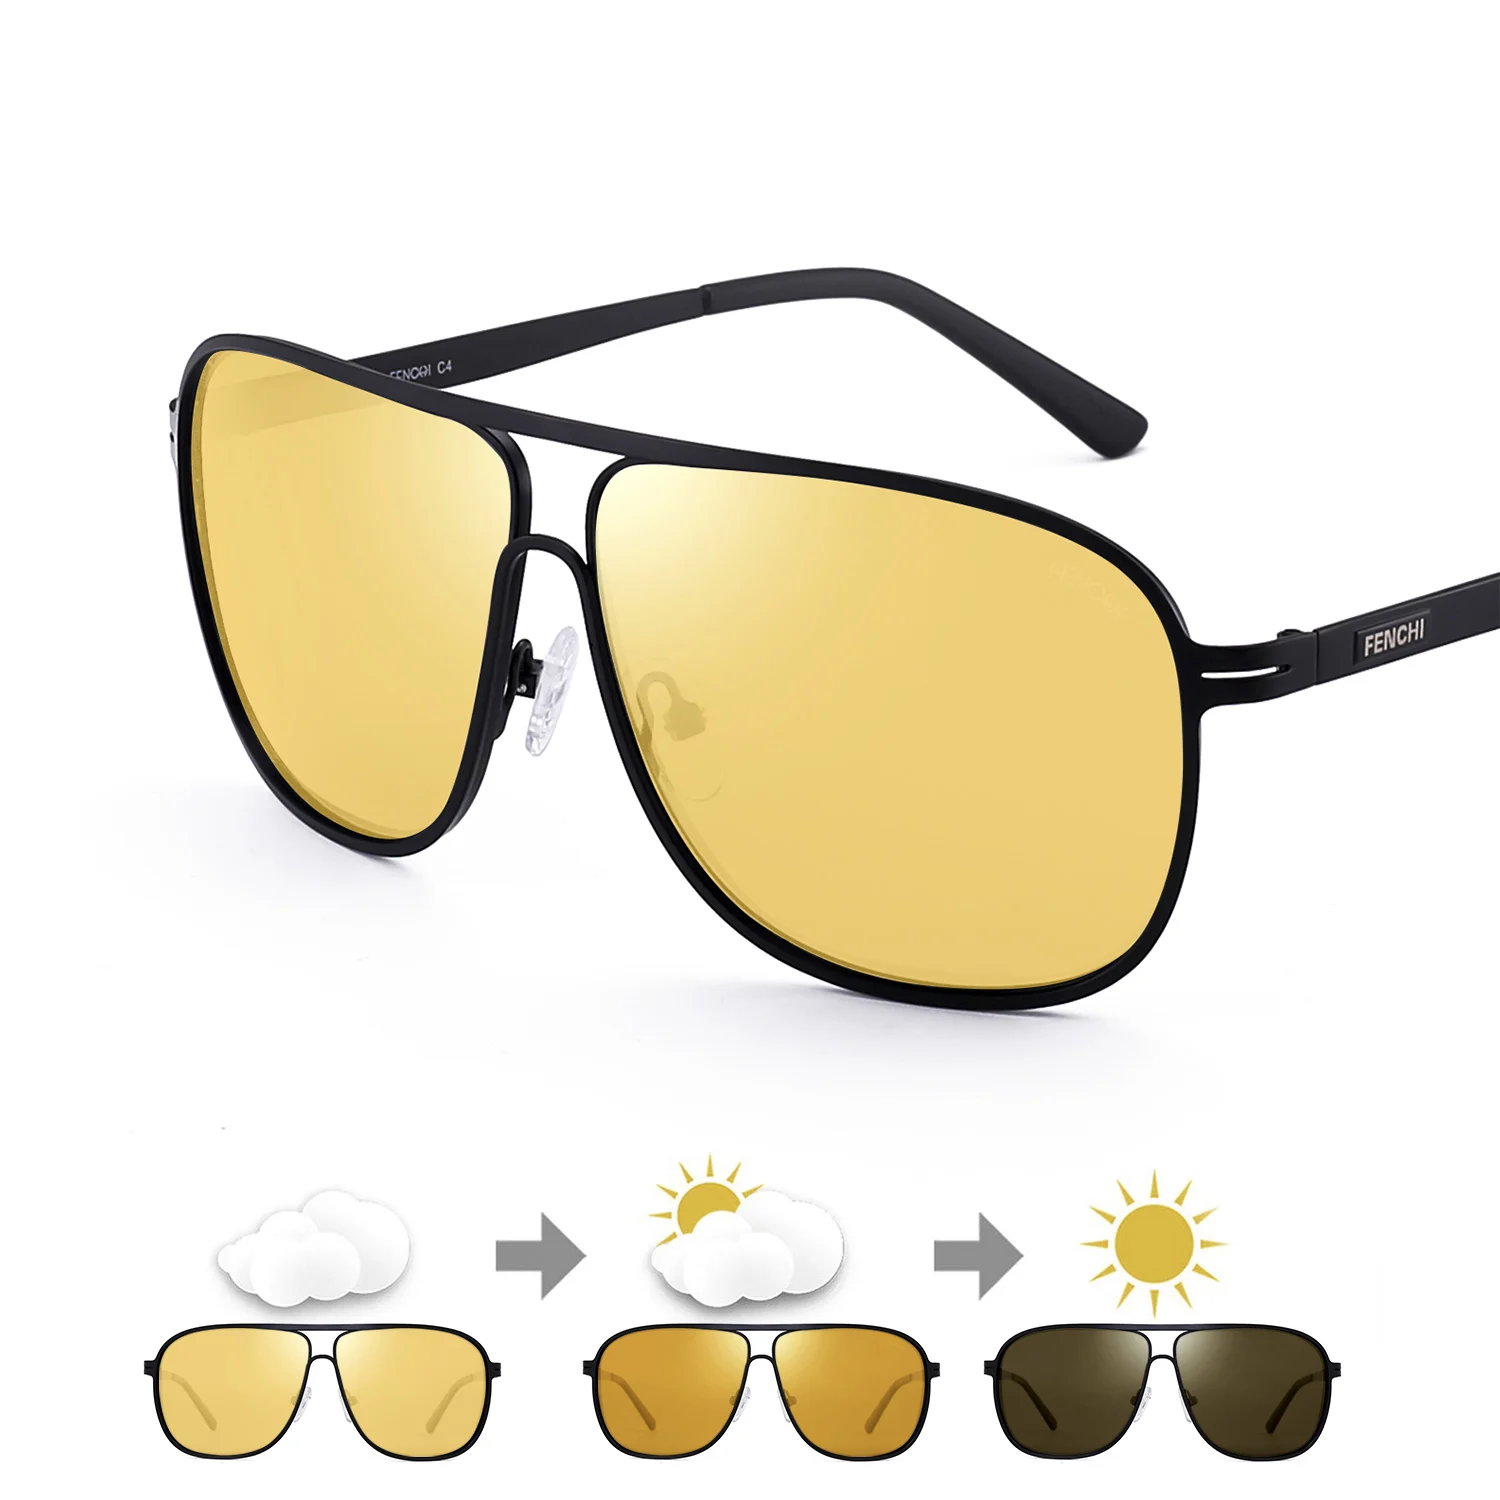 FENCHI, мужские очки ночного видения, поляризованные желтые антибликовые линзы, солнцезащитные очки для вождения, очки ночного видения для автомобиля